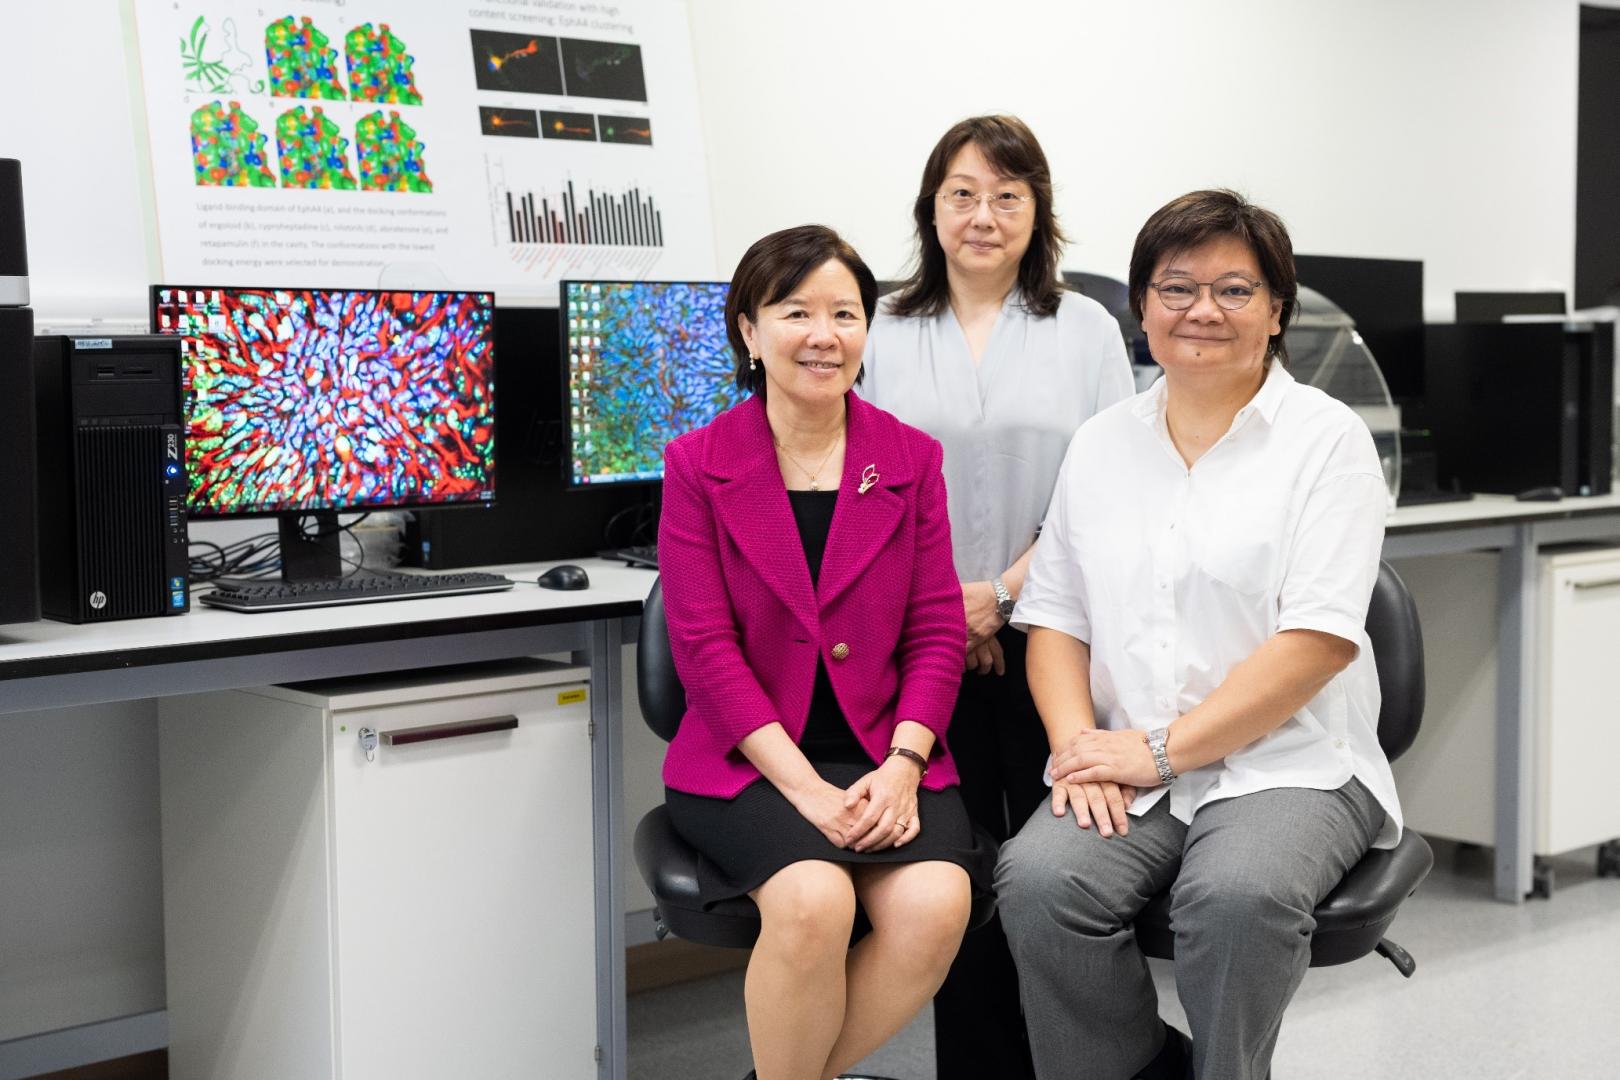 傅洁瑜教授（右）及叶翠芬博士（中）同样是叶玉如教授（左）所指导的博士生，三人合作接近30年，致力研究早期脑部退化。